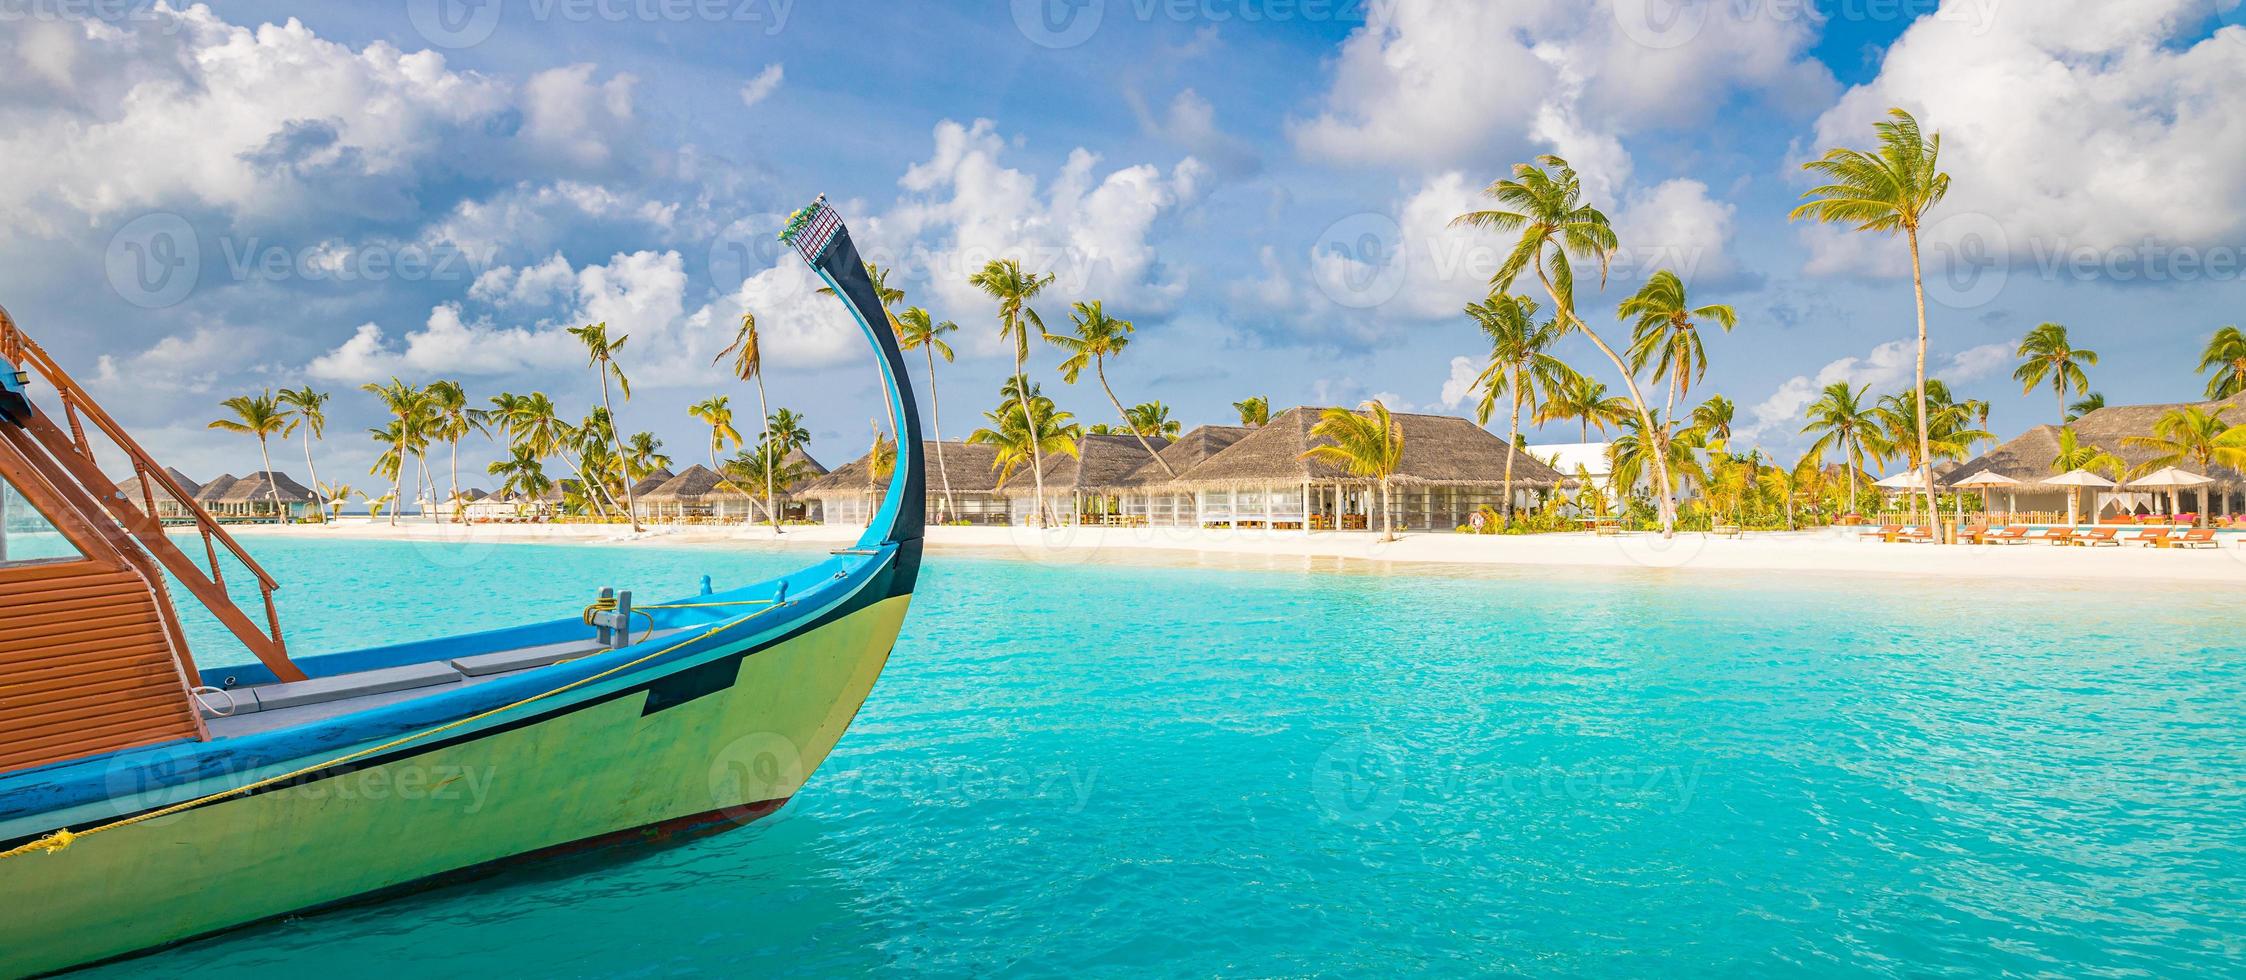 design ispiratore della spiaggia delle Maldive. Maldive barca tradizionale dhoni e perfetto mare blu con laguna. vista paradiso dell'hotel resort tropicale di lusso. costa idilliaca, spiaggia di sabbia bianca, palme foto